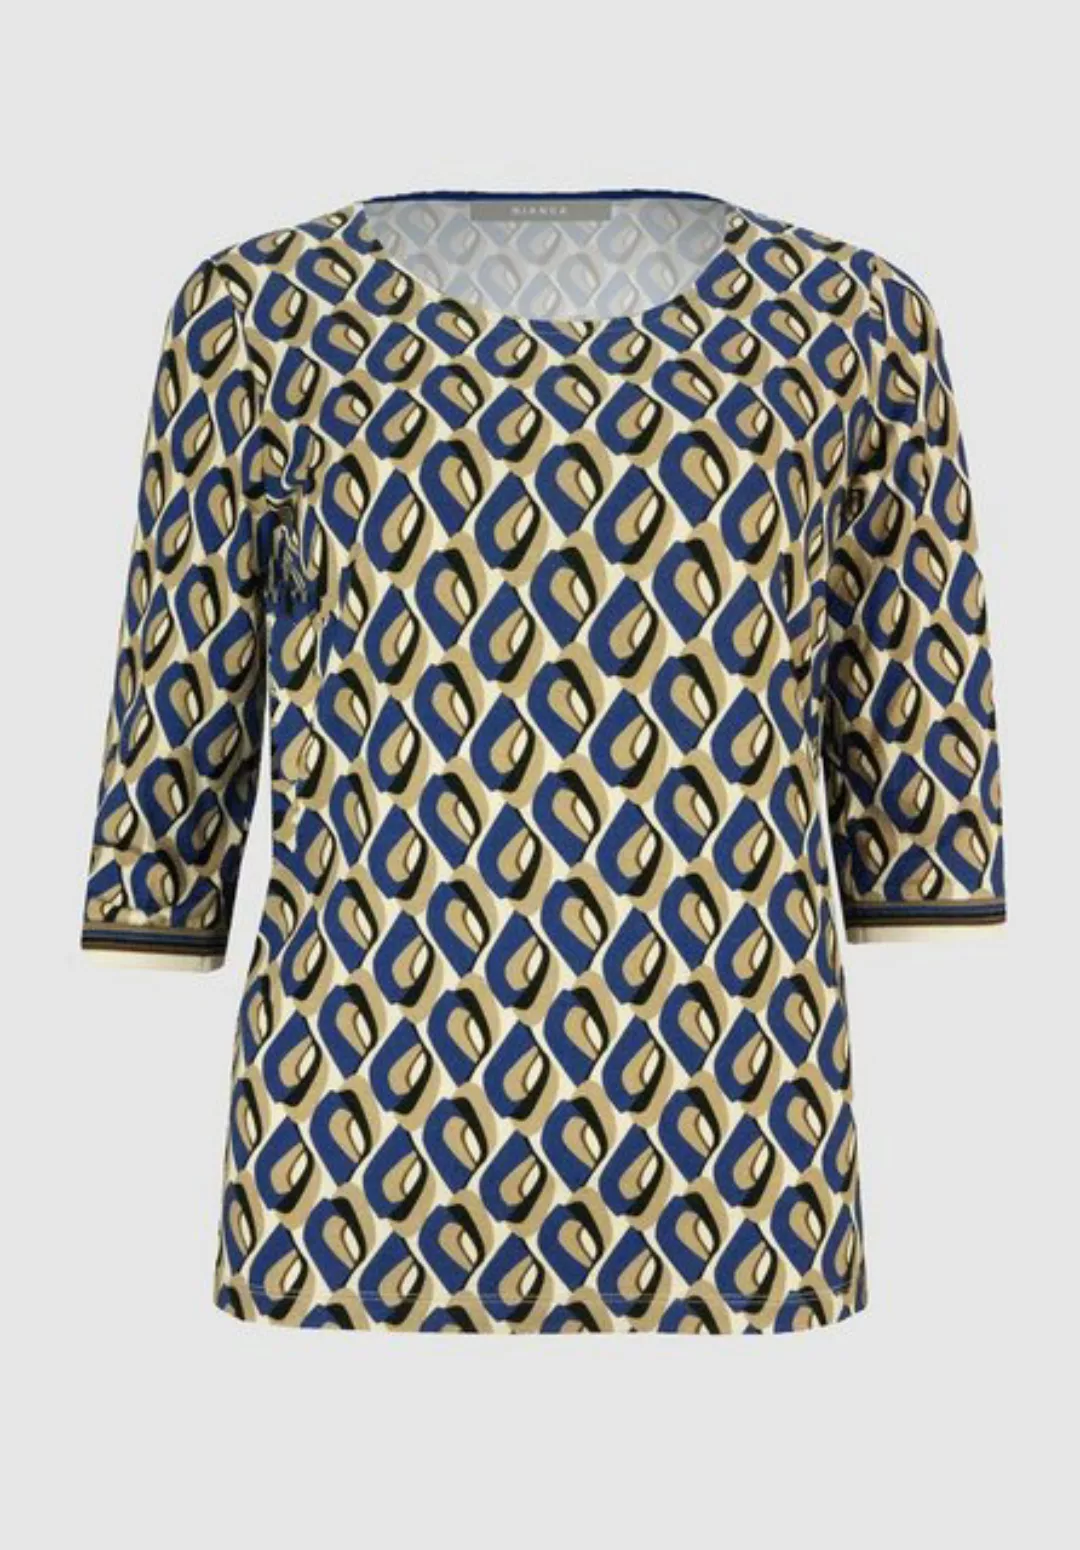 bianca Print-Shirt DINI mit modischem Muster in absoluten Trendfarben günstig online kaufen